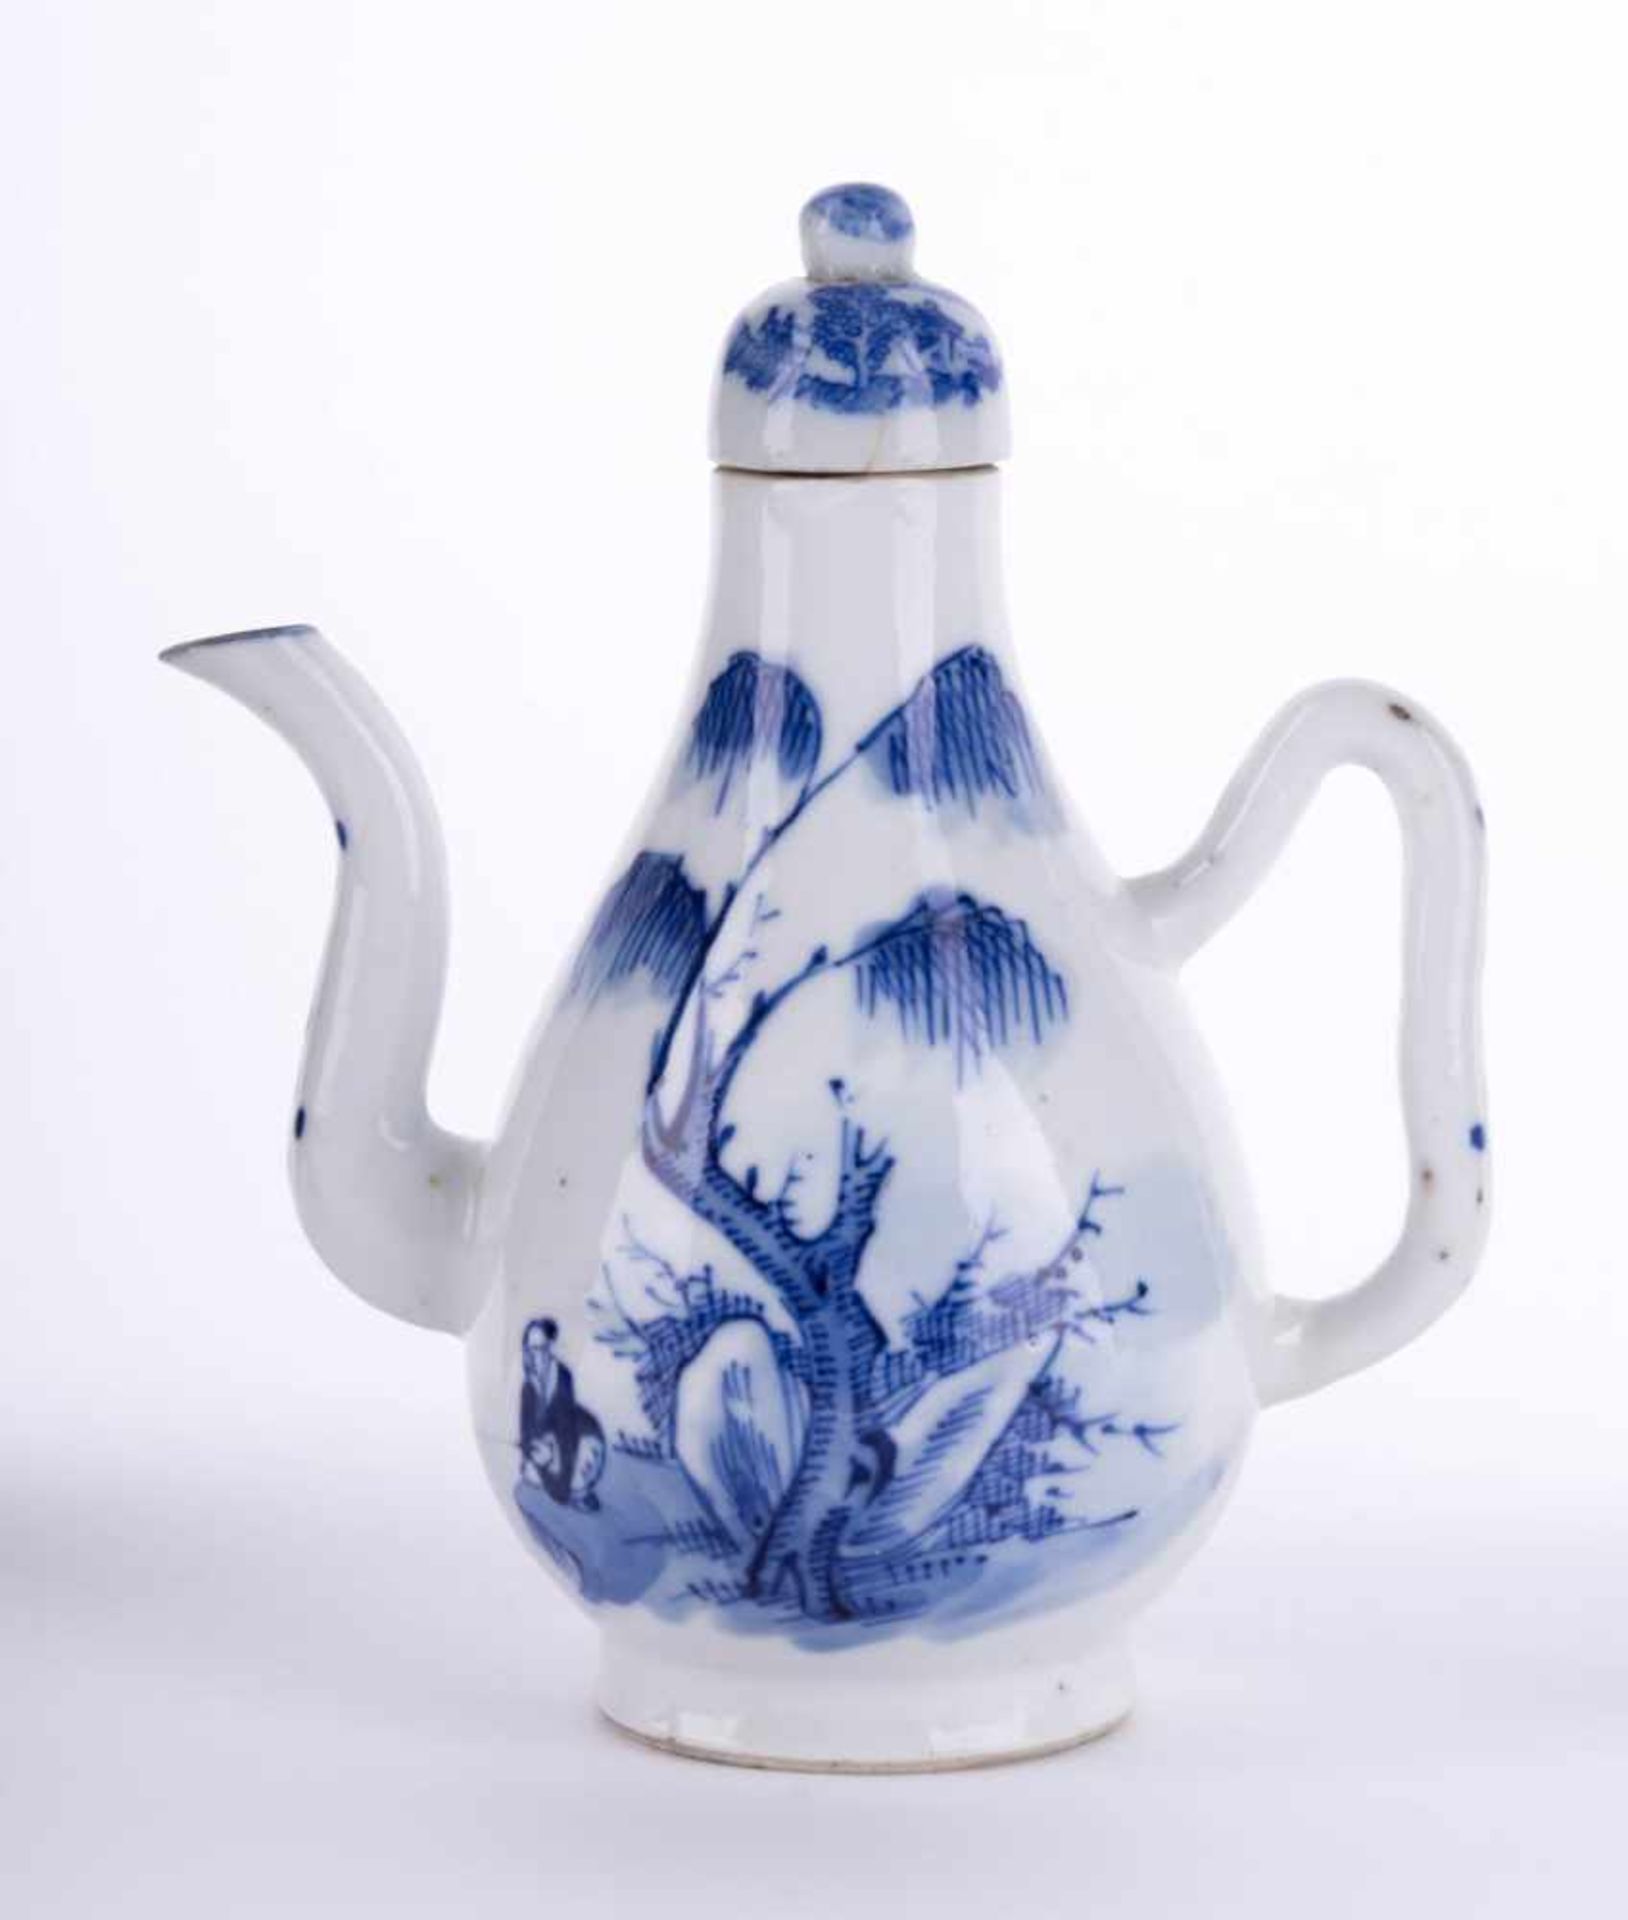 Kanne China 19. Jhd. / Pot, China 19th century blau weiß Malerei, unterm Stand alte Sammlungsnummer,